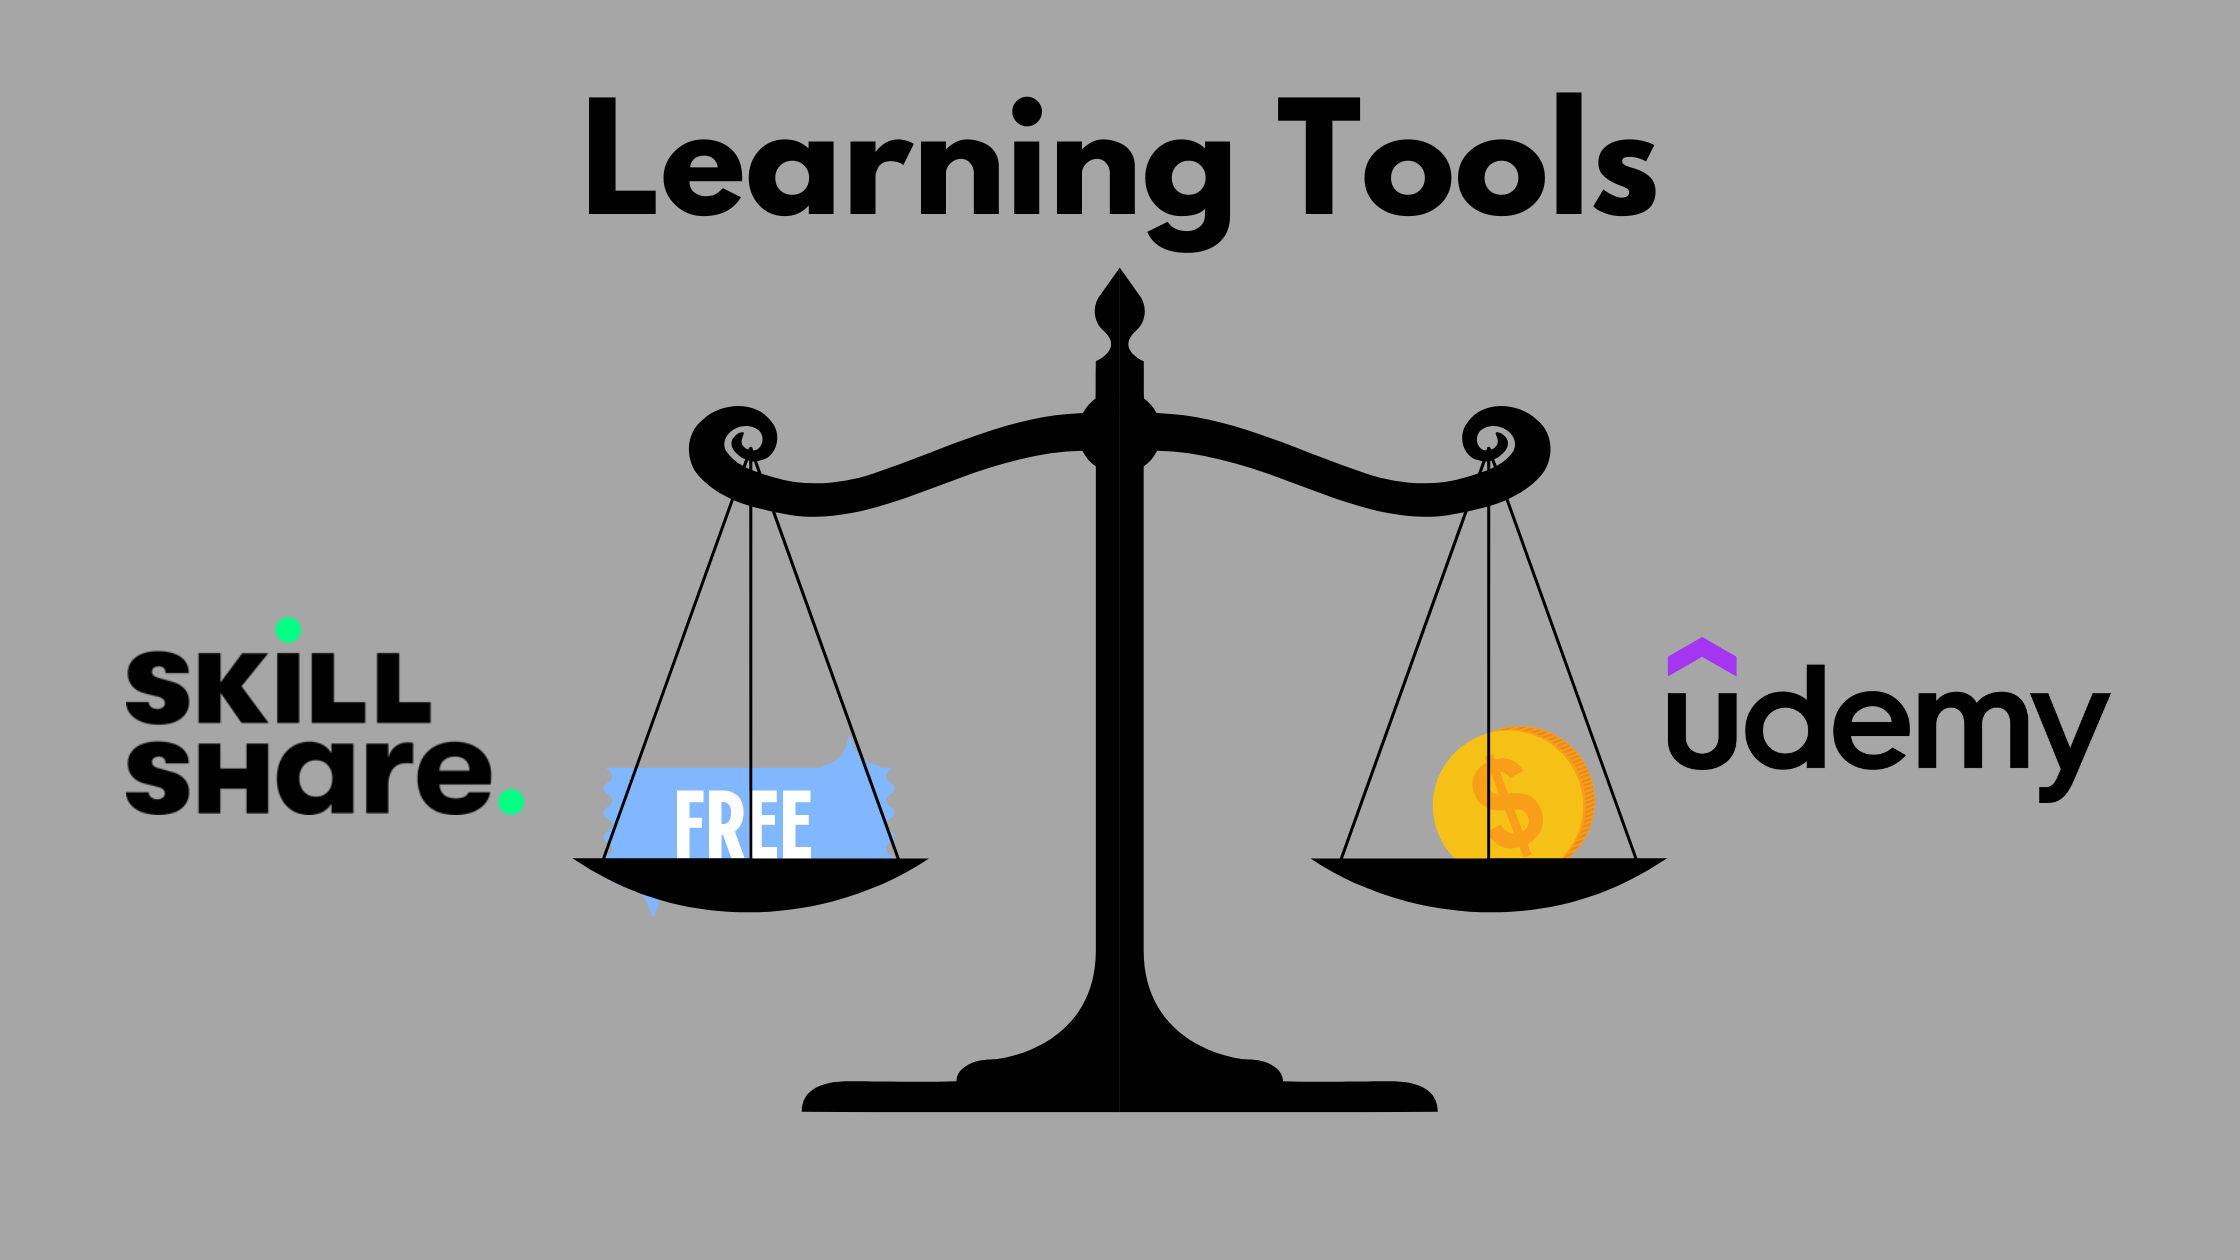 Free vs Paid Tools